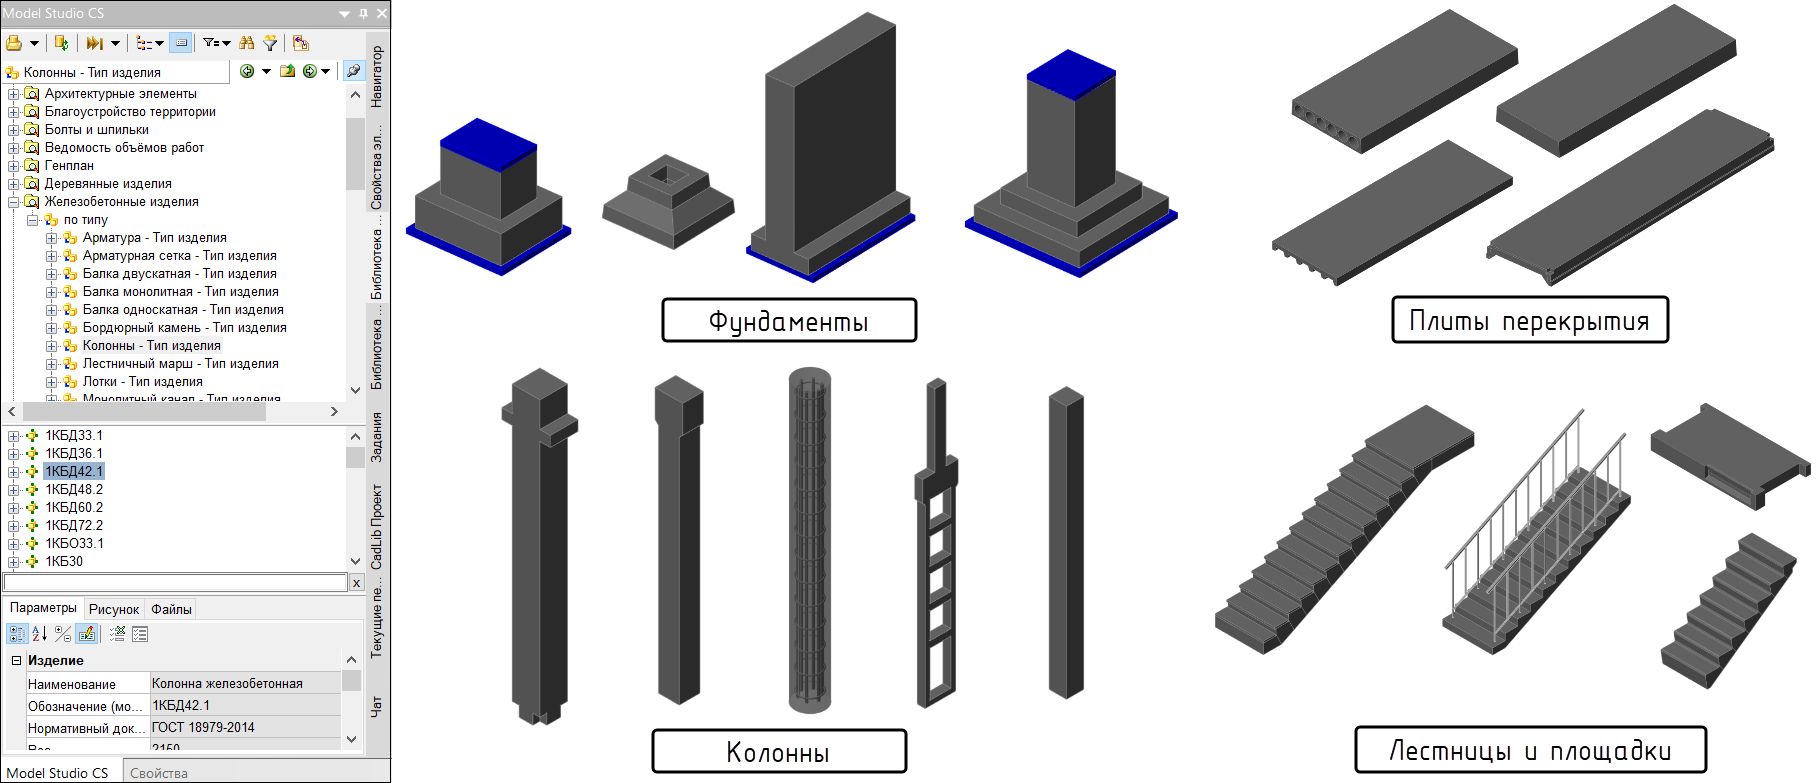 Рис. 1. Примеры разных типов конструкций из базы данных стандартных компонентов